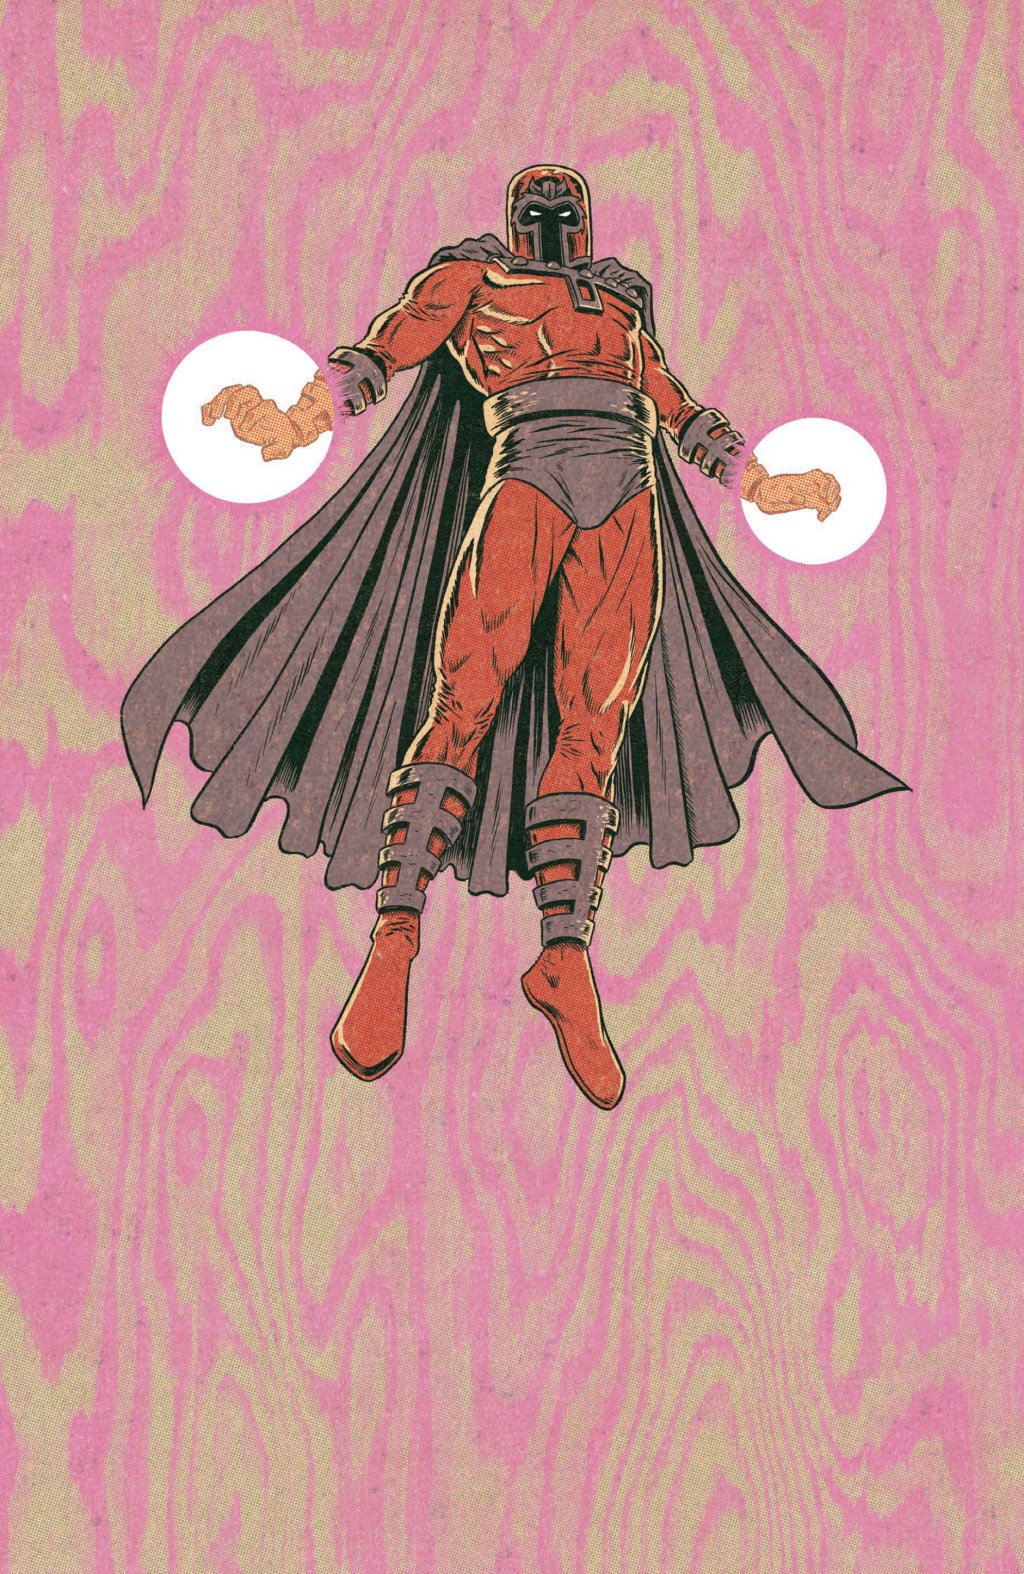 Magneto rises on Ed Piskor's character variant cover to X-Men: Grand Design Vol. 1 #1 (2017), Marvel Comics